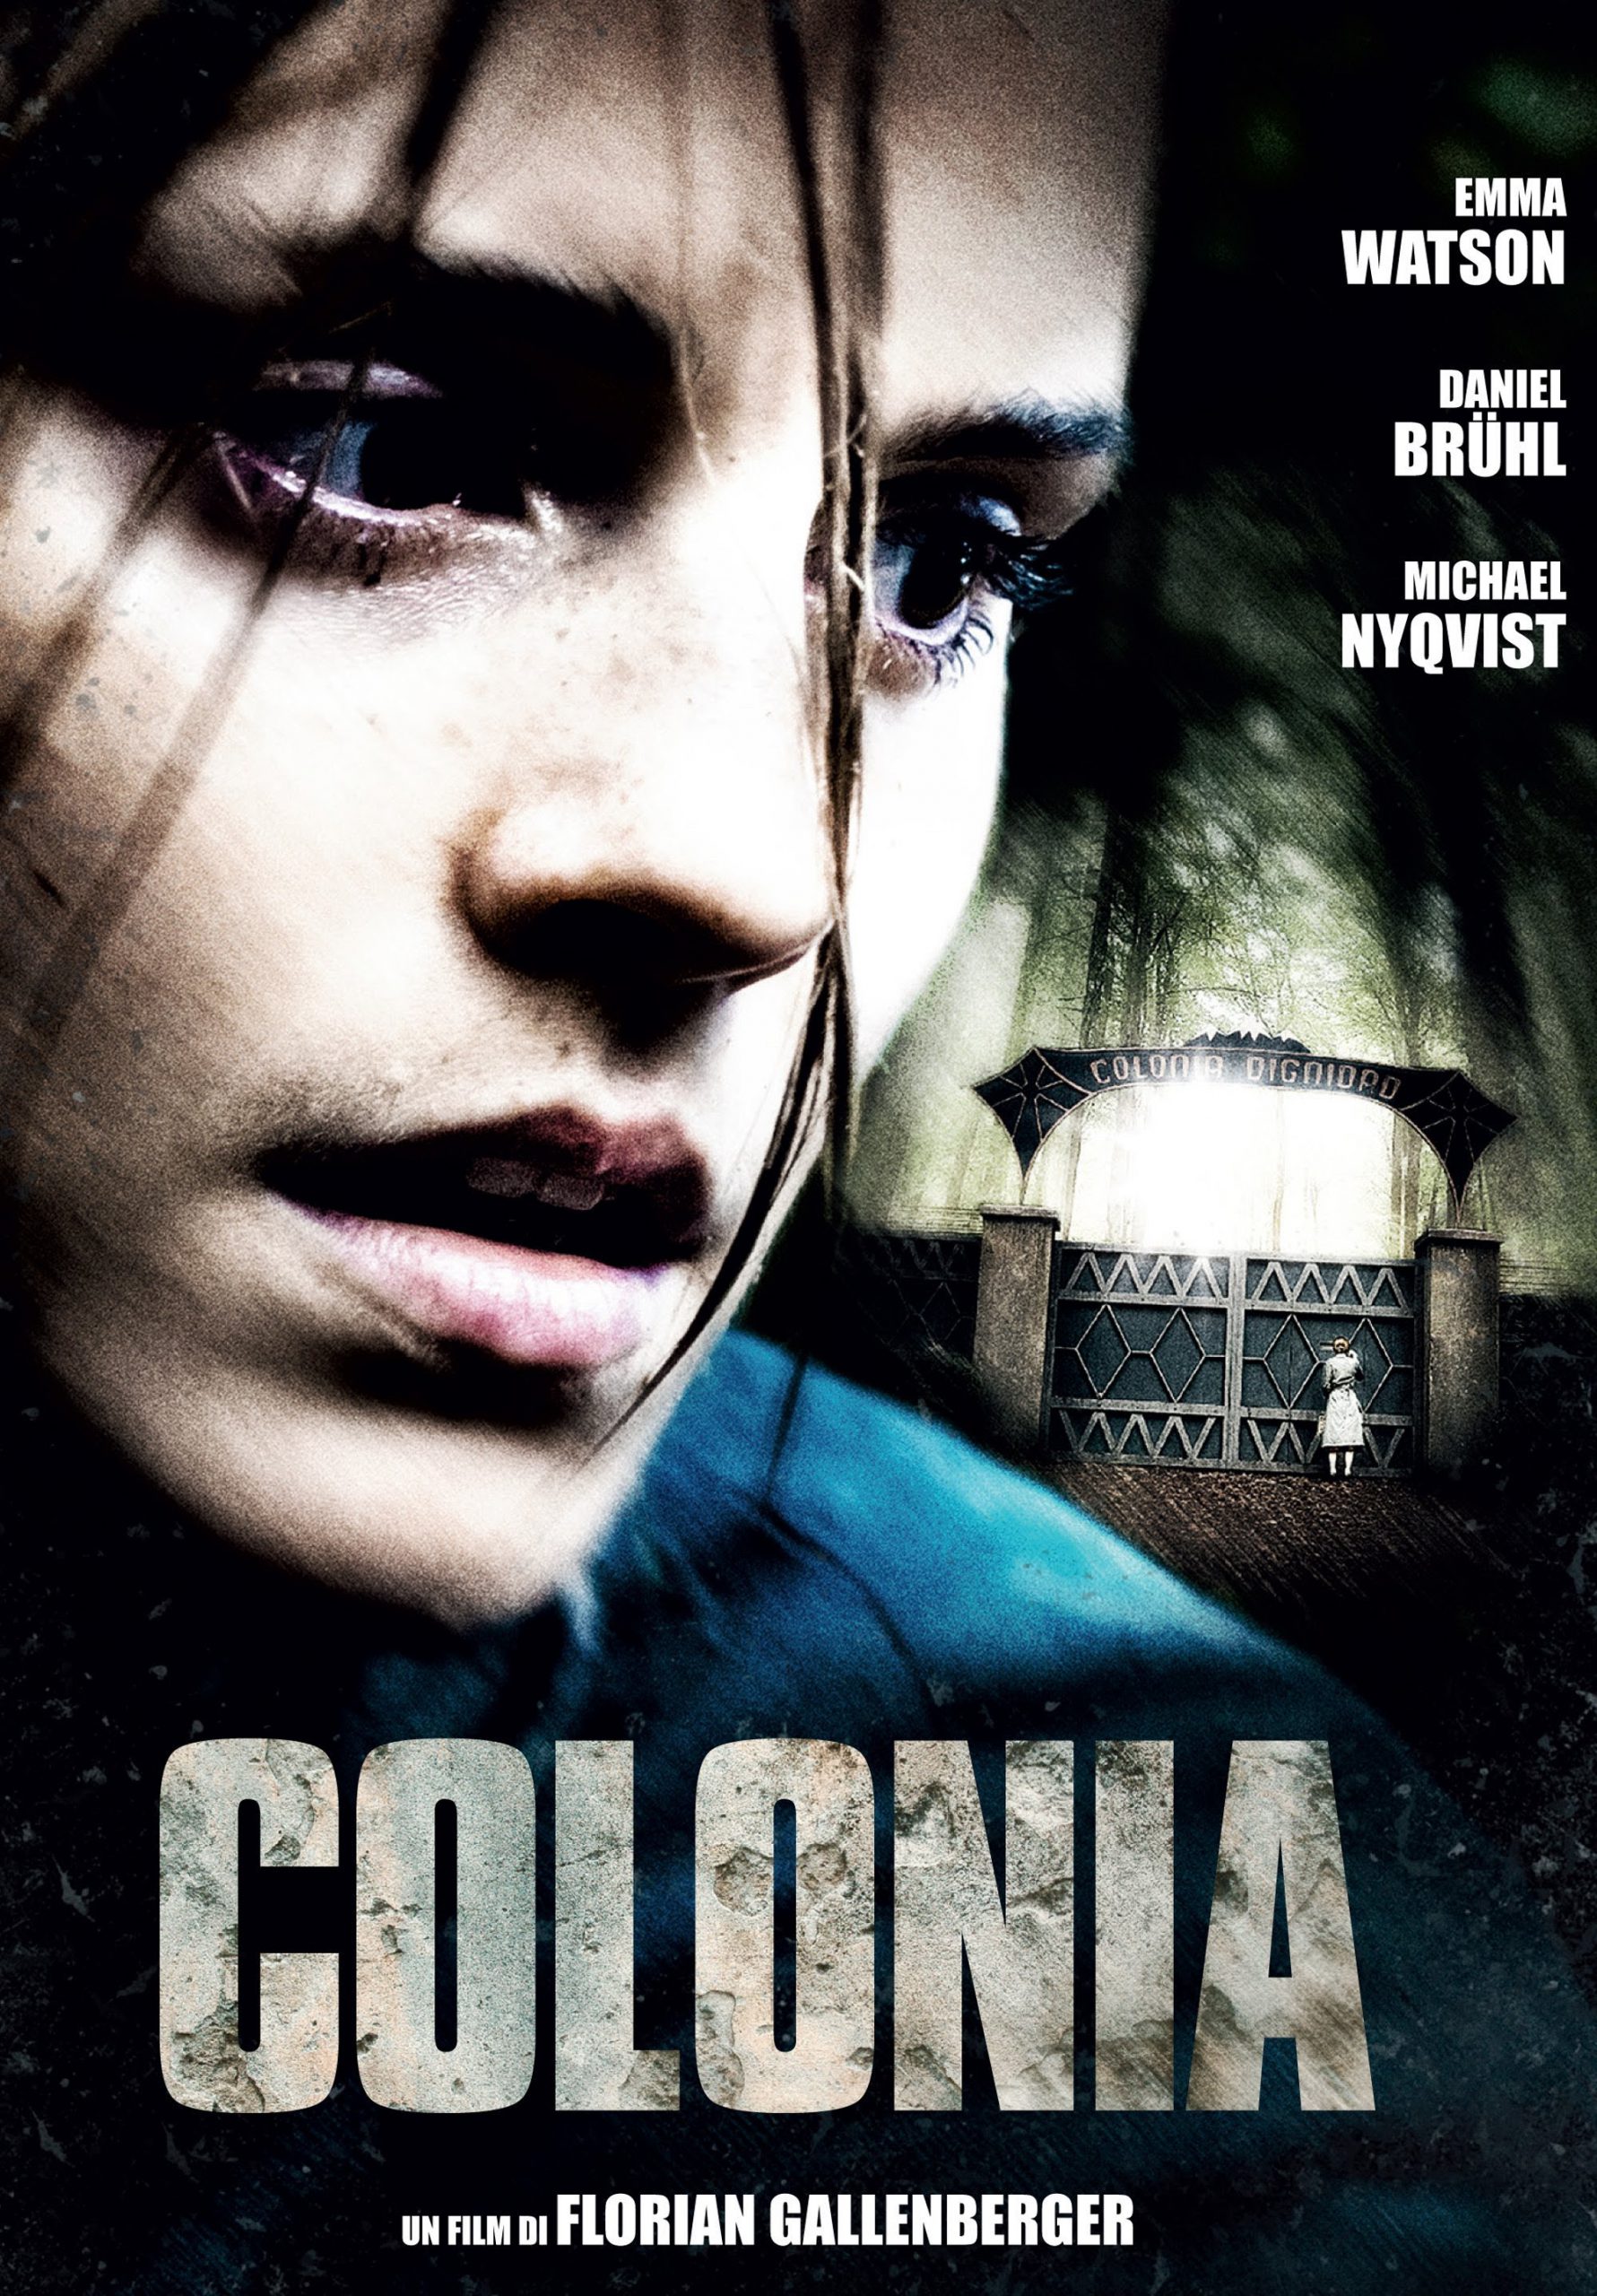 Colonia [HD] (2016)